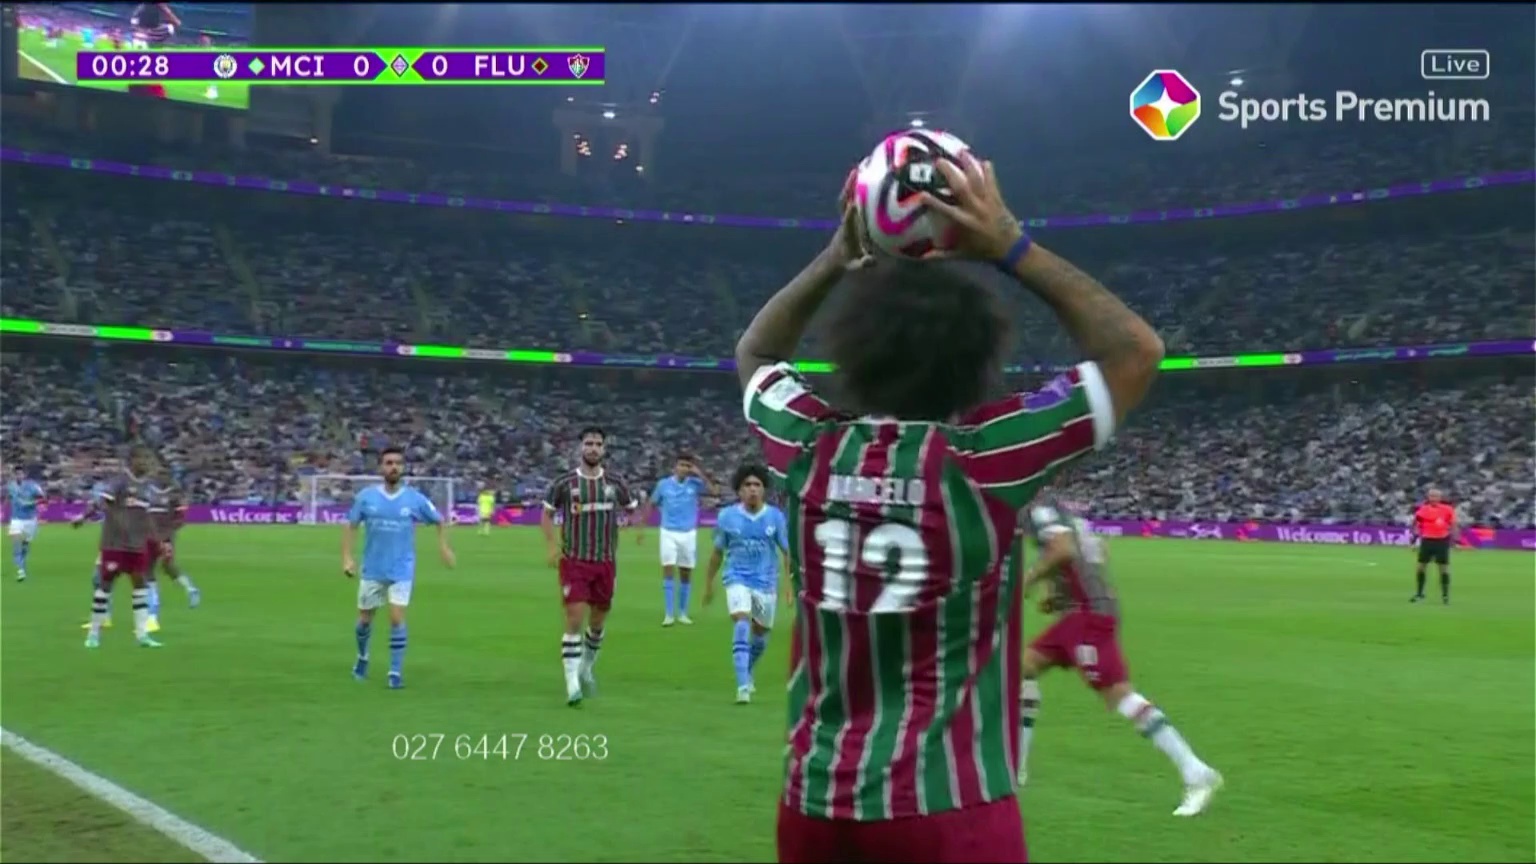 Manchester City [1] - 0 Fluminense - Alvarez J 1'